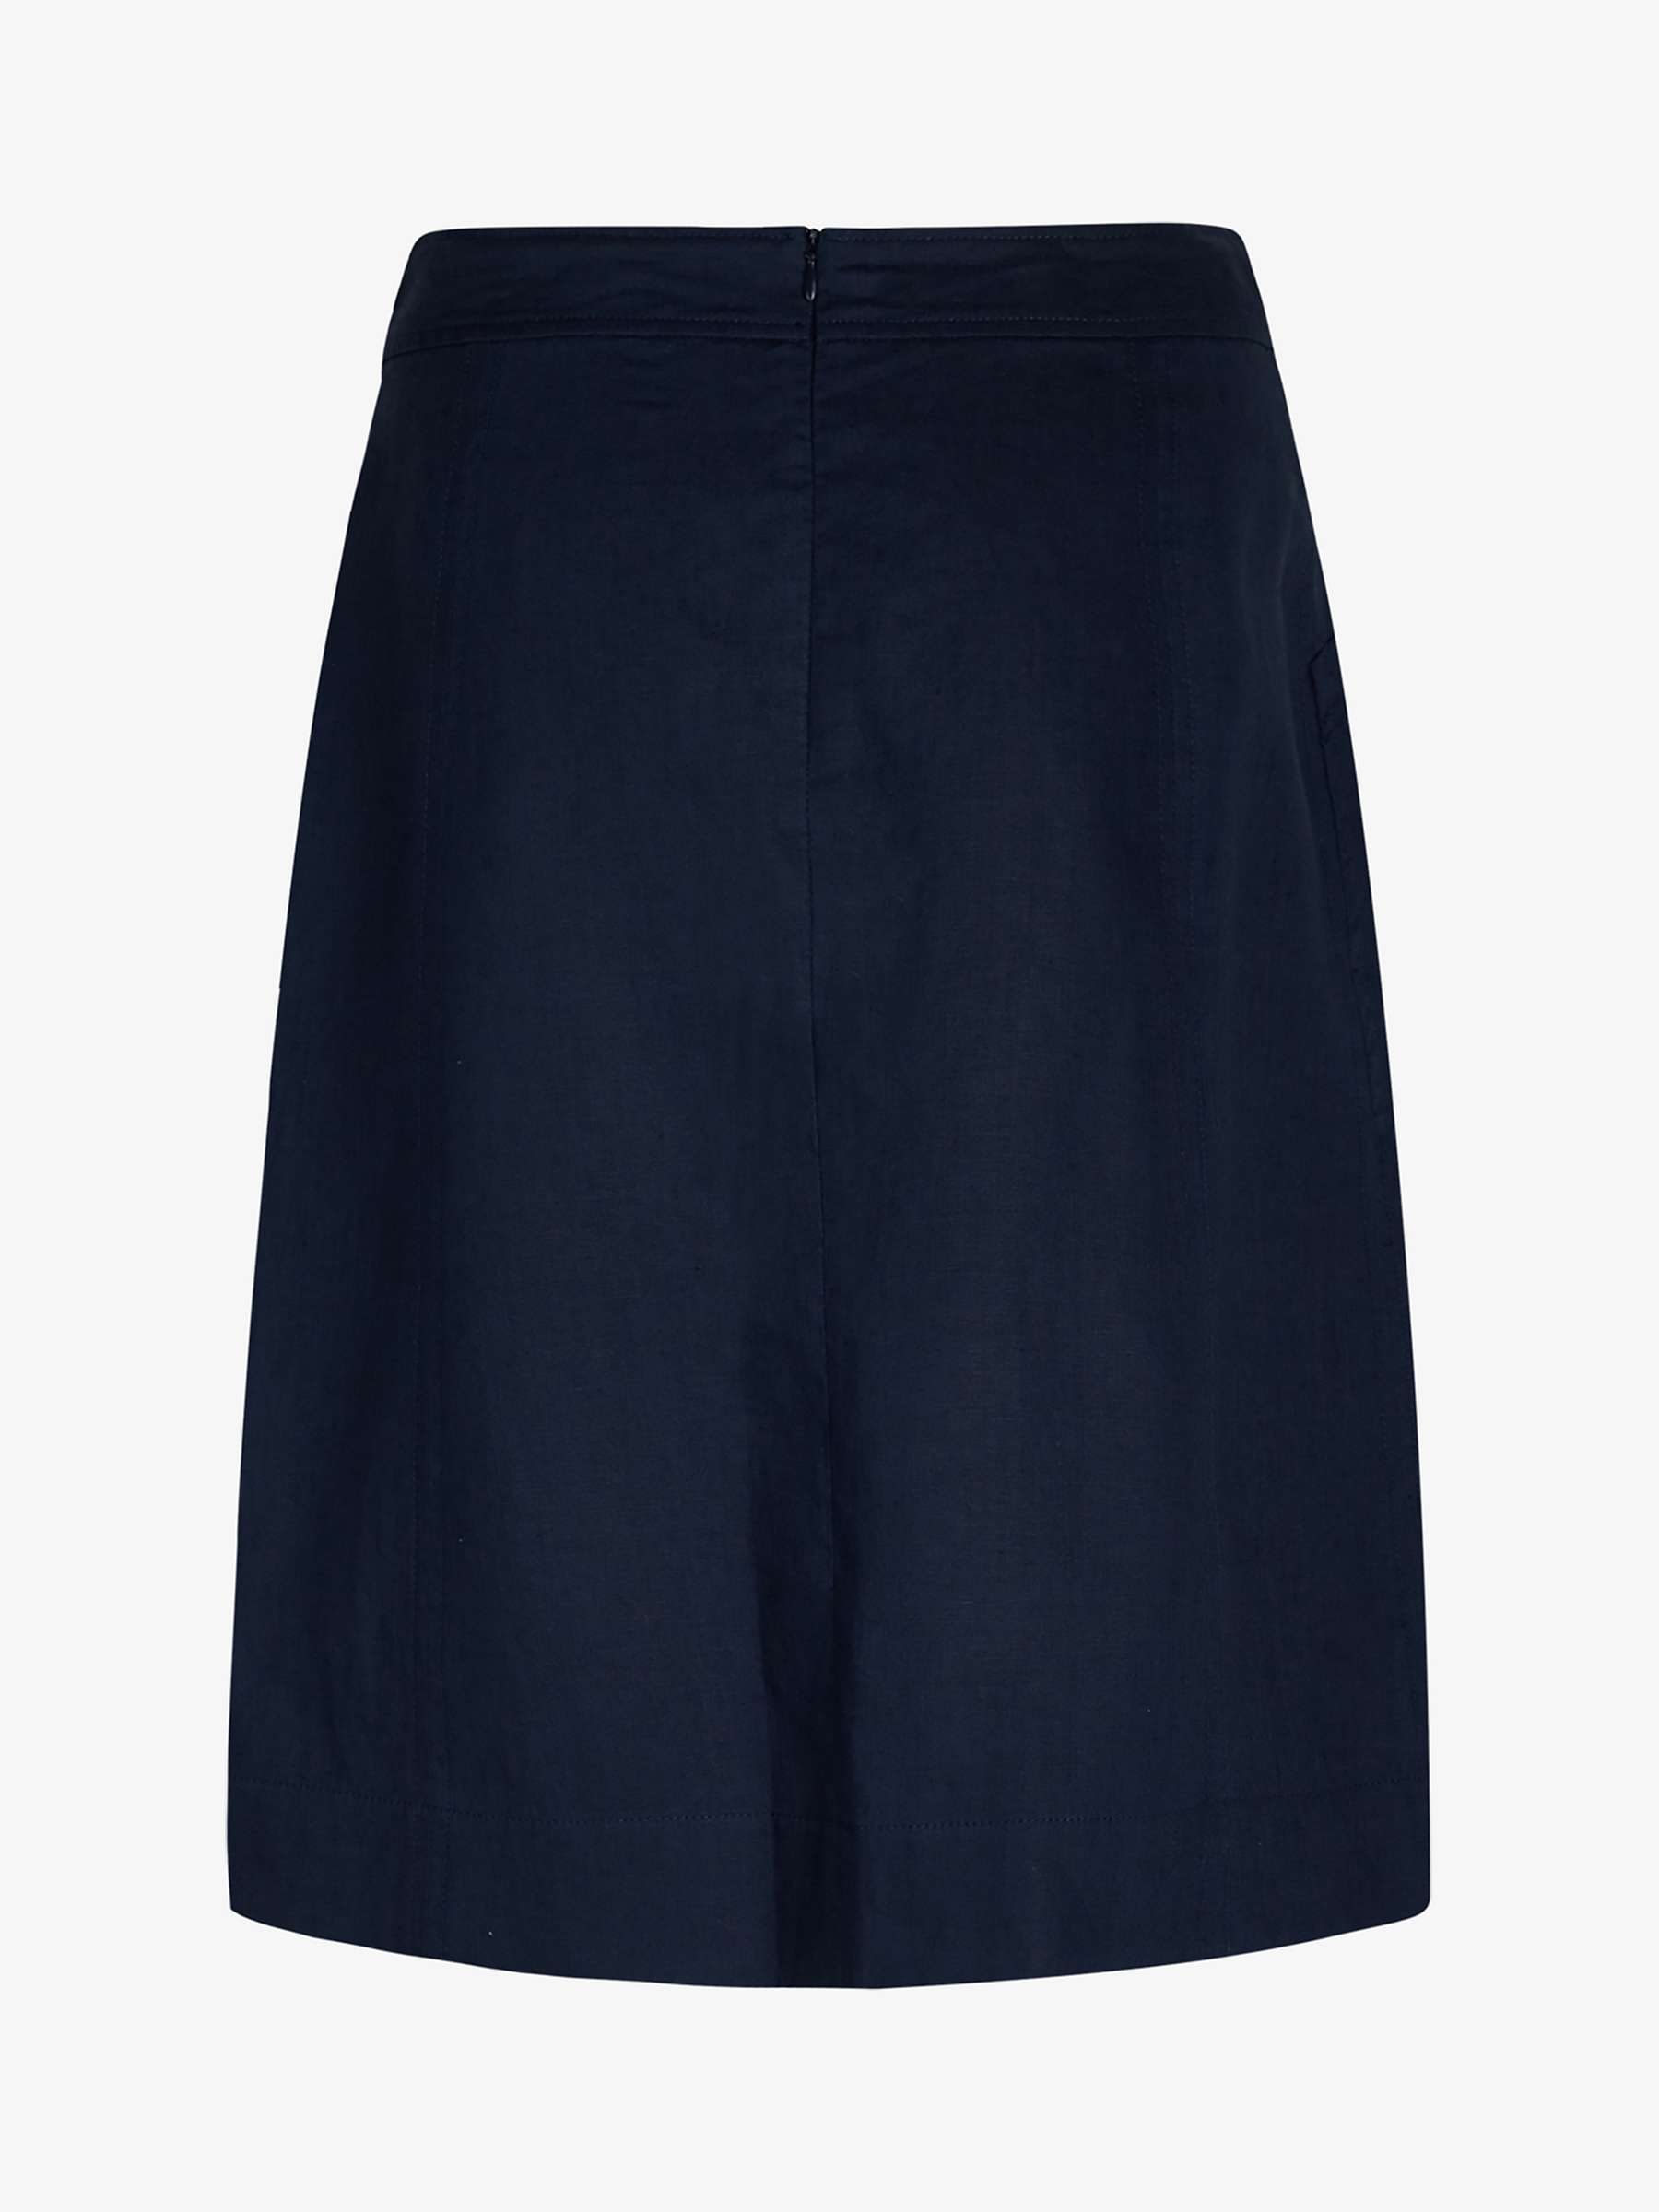 Buy Noa Noa Lise Linen Skirt Online at johnlewis.com